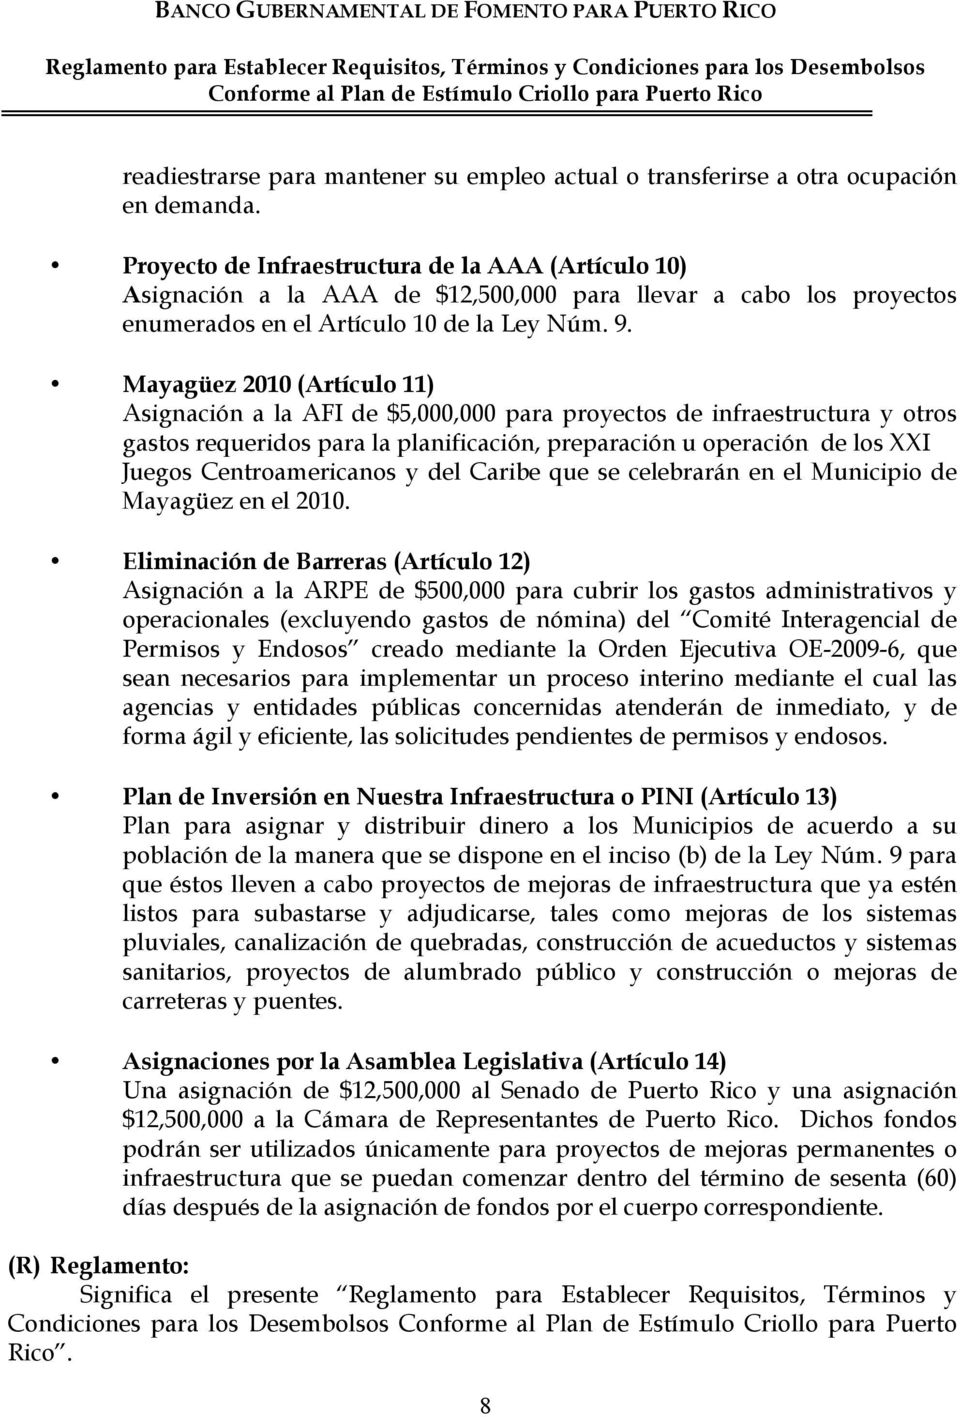 Mayagüez 2010 (Artículo 11) Asignación a la AFI de $5,000,000 para proyectos de infraestructura y otros gastos requeridos para la planificación, preparación u operación de los XXI Juegos